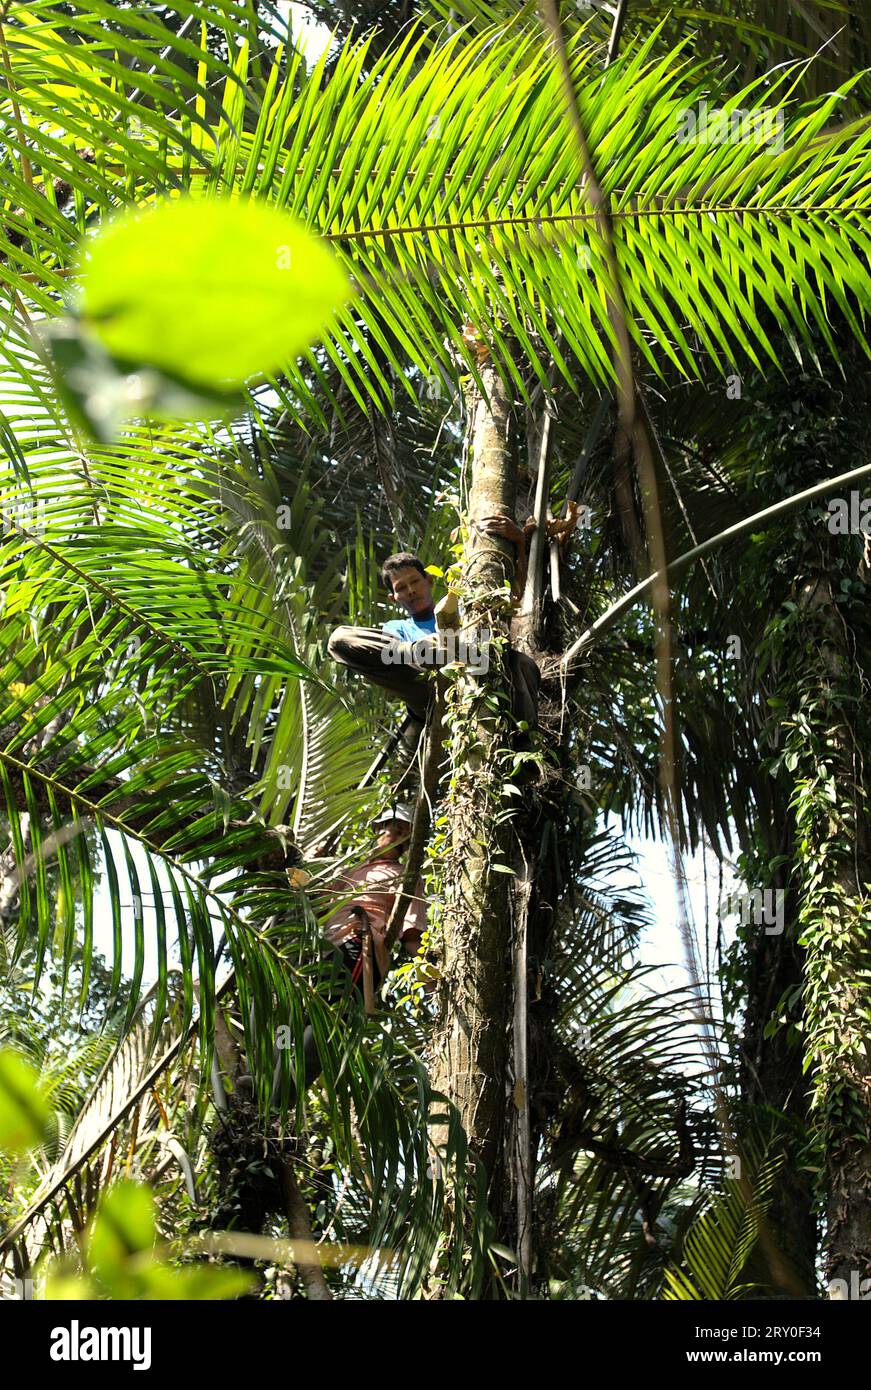 Ein Ranger baut eine Baumplattform für die Überwachung von Wildtieren im Ujung Kulon National Park, Pandeglang, Banten, Indonesien. Ein gut bewirtschafteter Nationalpark verfügt über eine kompetente und angemessene Strategie, um den Verlust der biologischen Vielfalt und den Klimawandel zu verhindern und die lokale Gesellschaft zu verbessern, während gleichzeitig das wesentliche Funktionieren des Ökosystems, von dem die Menschheit weltweit abhängig ist, erhalten bleibt, so Wissenschaftler. "Große Gebiete von Nationalparks wurden jedoch unter strengen Schutz gestellt, um die Erhaltung der biologischen Vielfalt und die Integrität der Ökosysteme zu gewährleisten, was den Gemeinden den Zugang zu Land und natürlichen Ressourcen verwehrt. Stockfoto